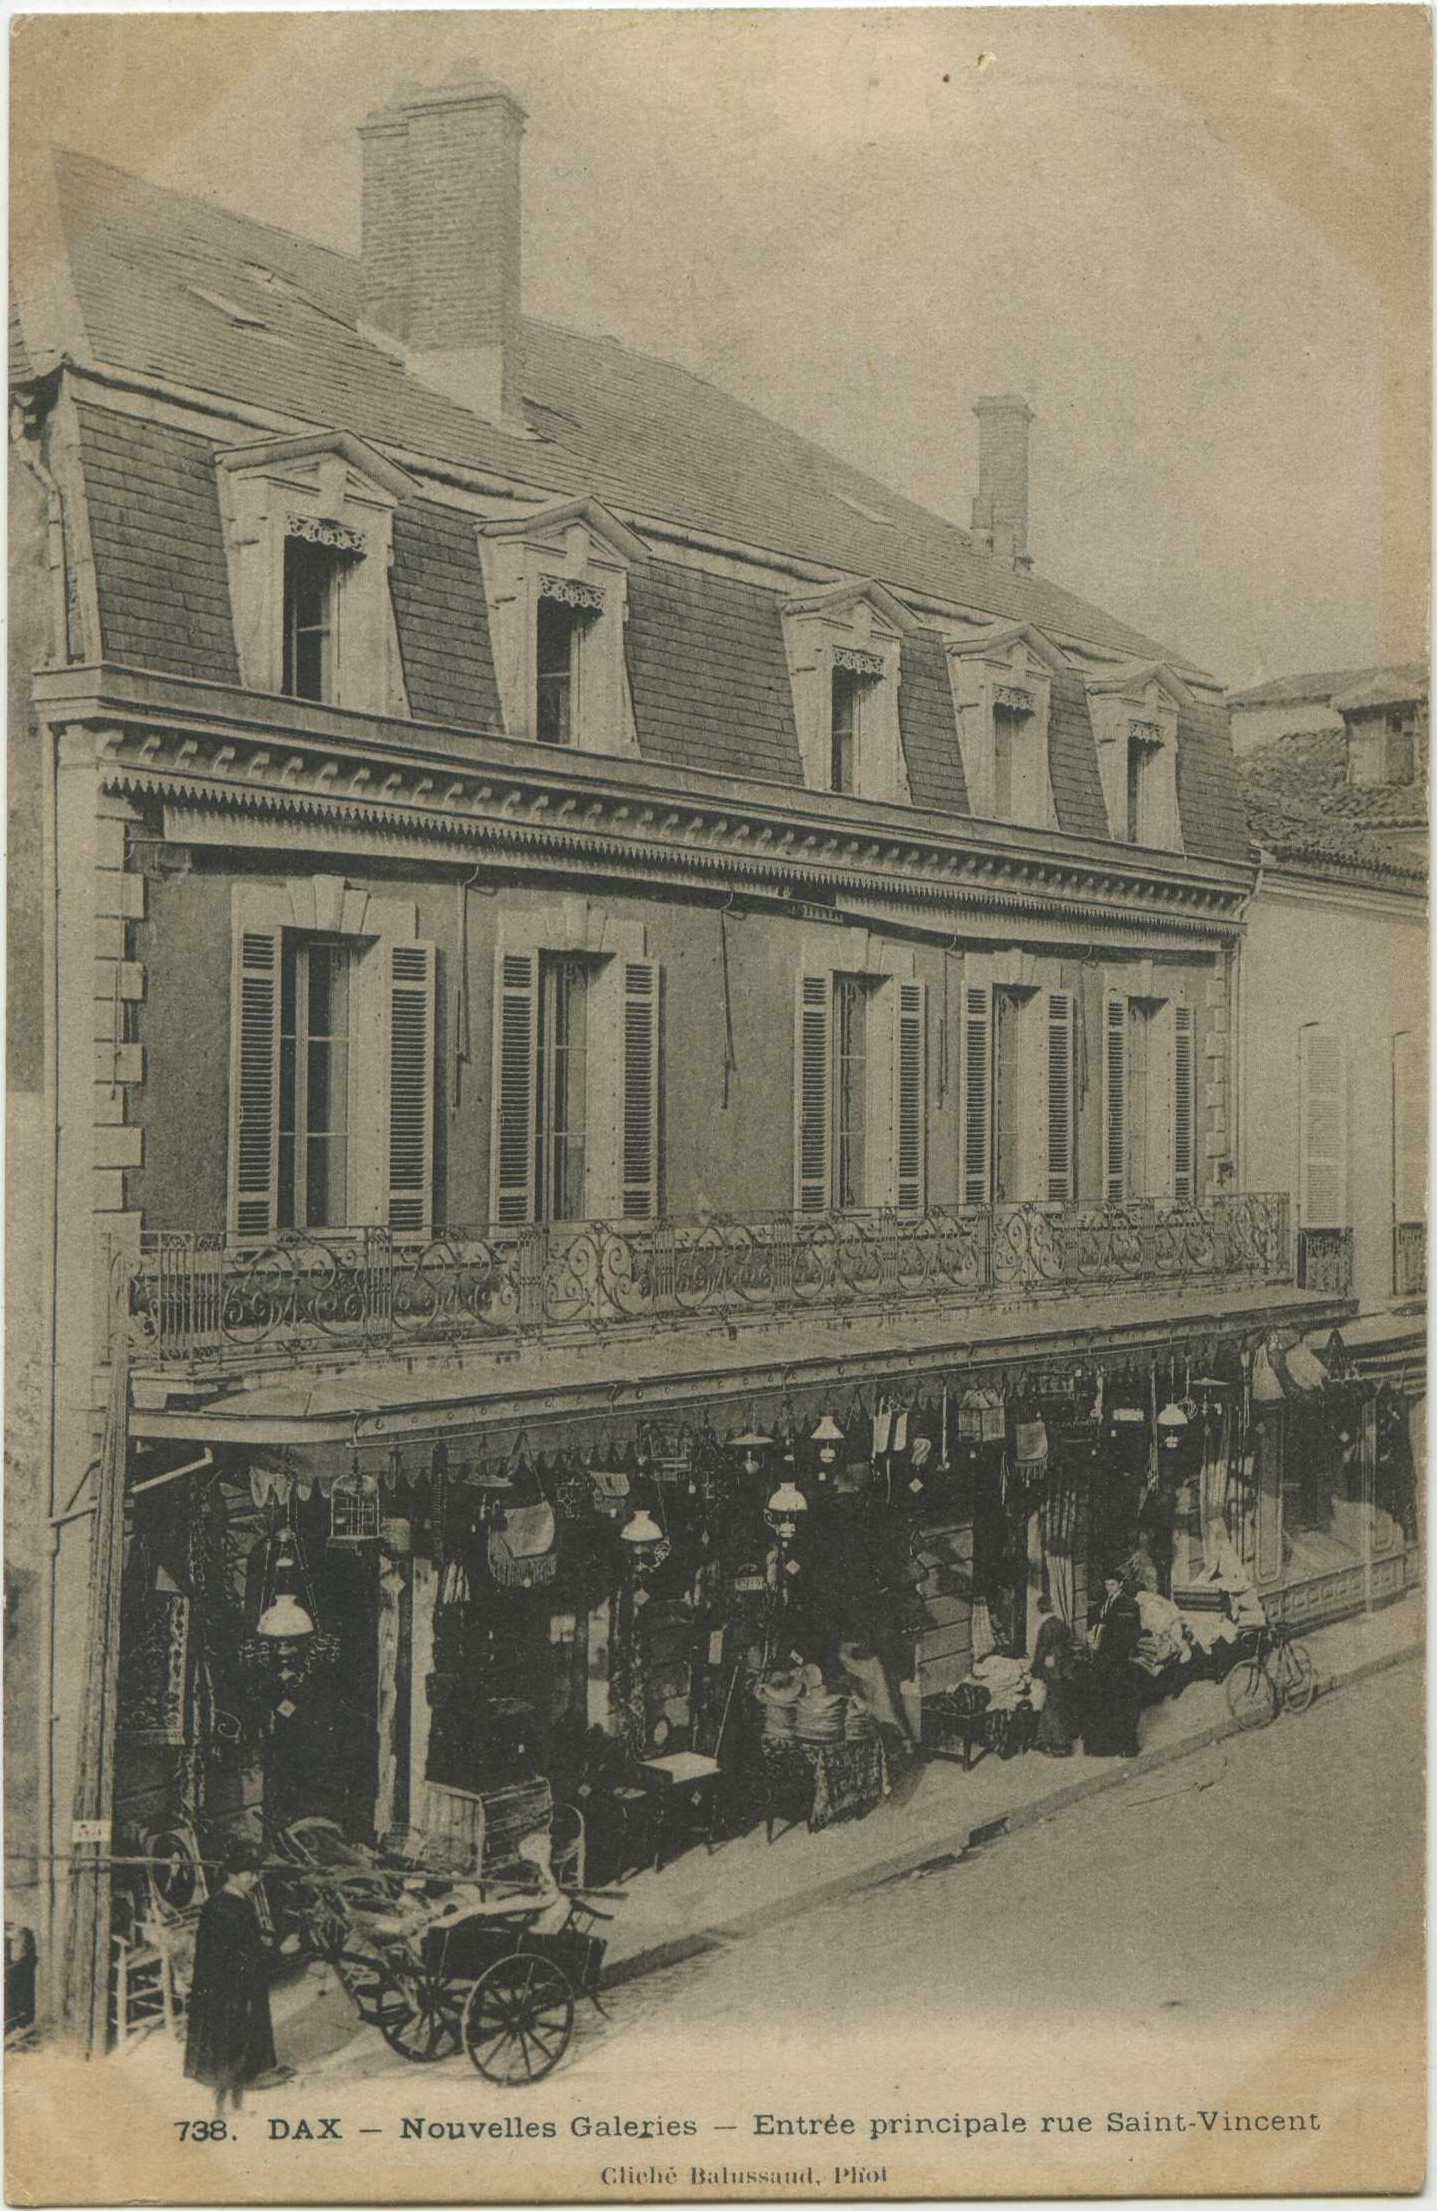 Dax - Nouvelles Galeries - Entrée principale rue Saint-Vincent